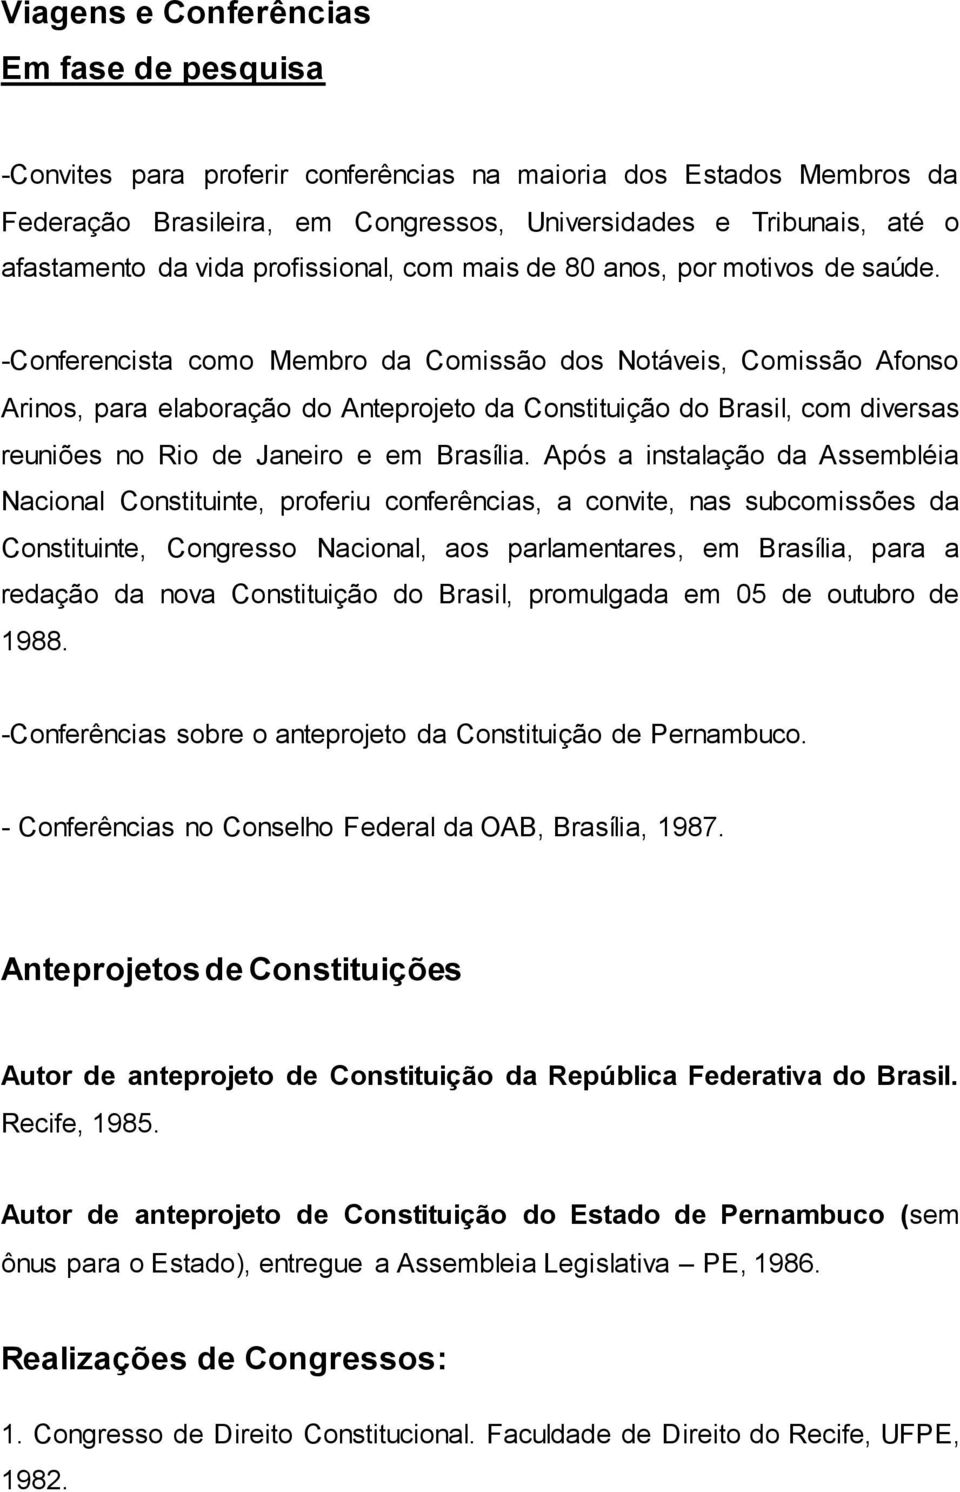 -Conferencista como Membro da Comissão dos Notáveis, Comissão Afonso Arinos, para elaboração do Anteprojeto da Constituição do Brasil, com diversas reuniões no Rio de Janeiro e em Brasília.